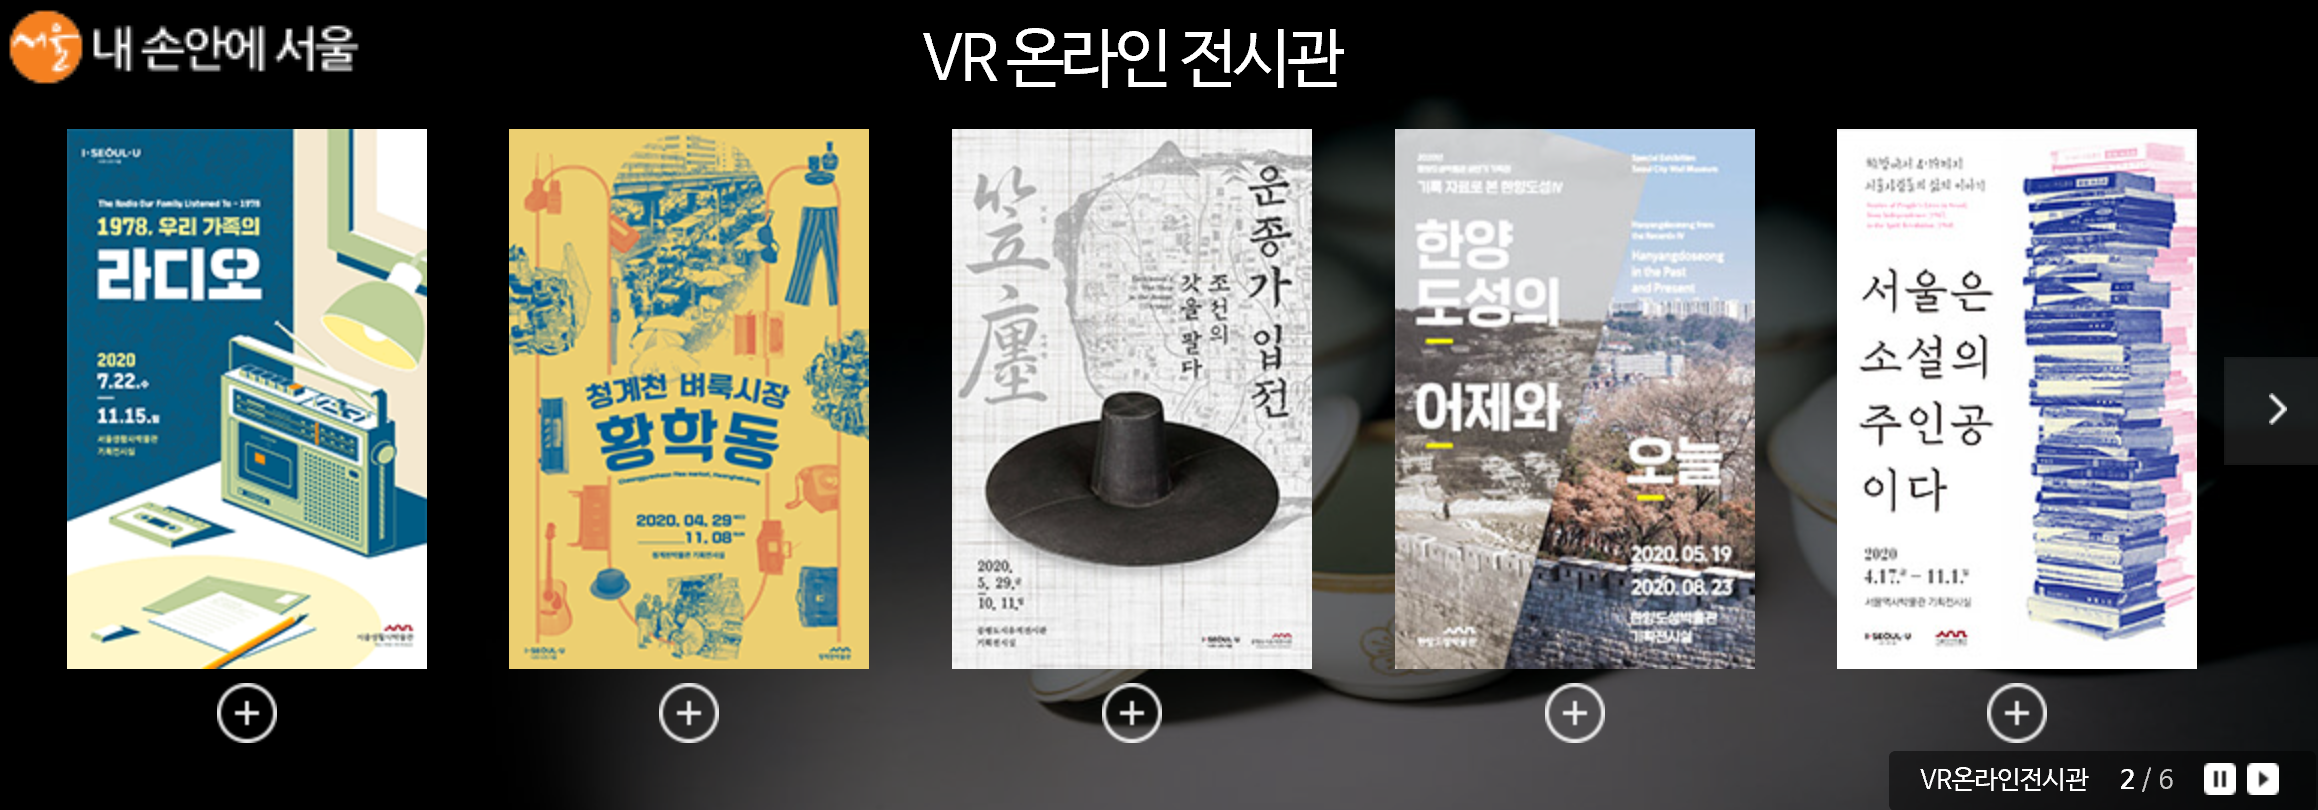 서울역사박물관 홈페이지 VR온라인 전시관 